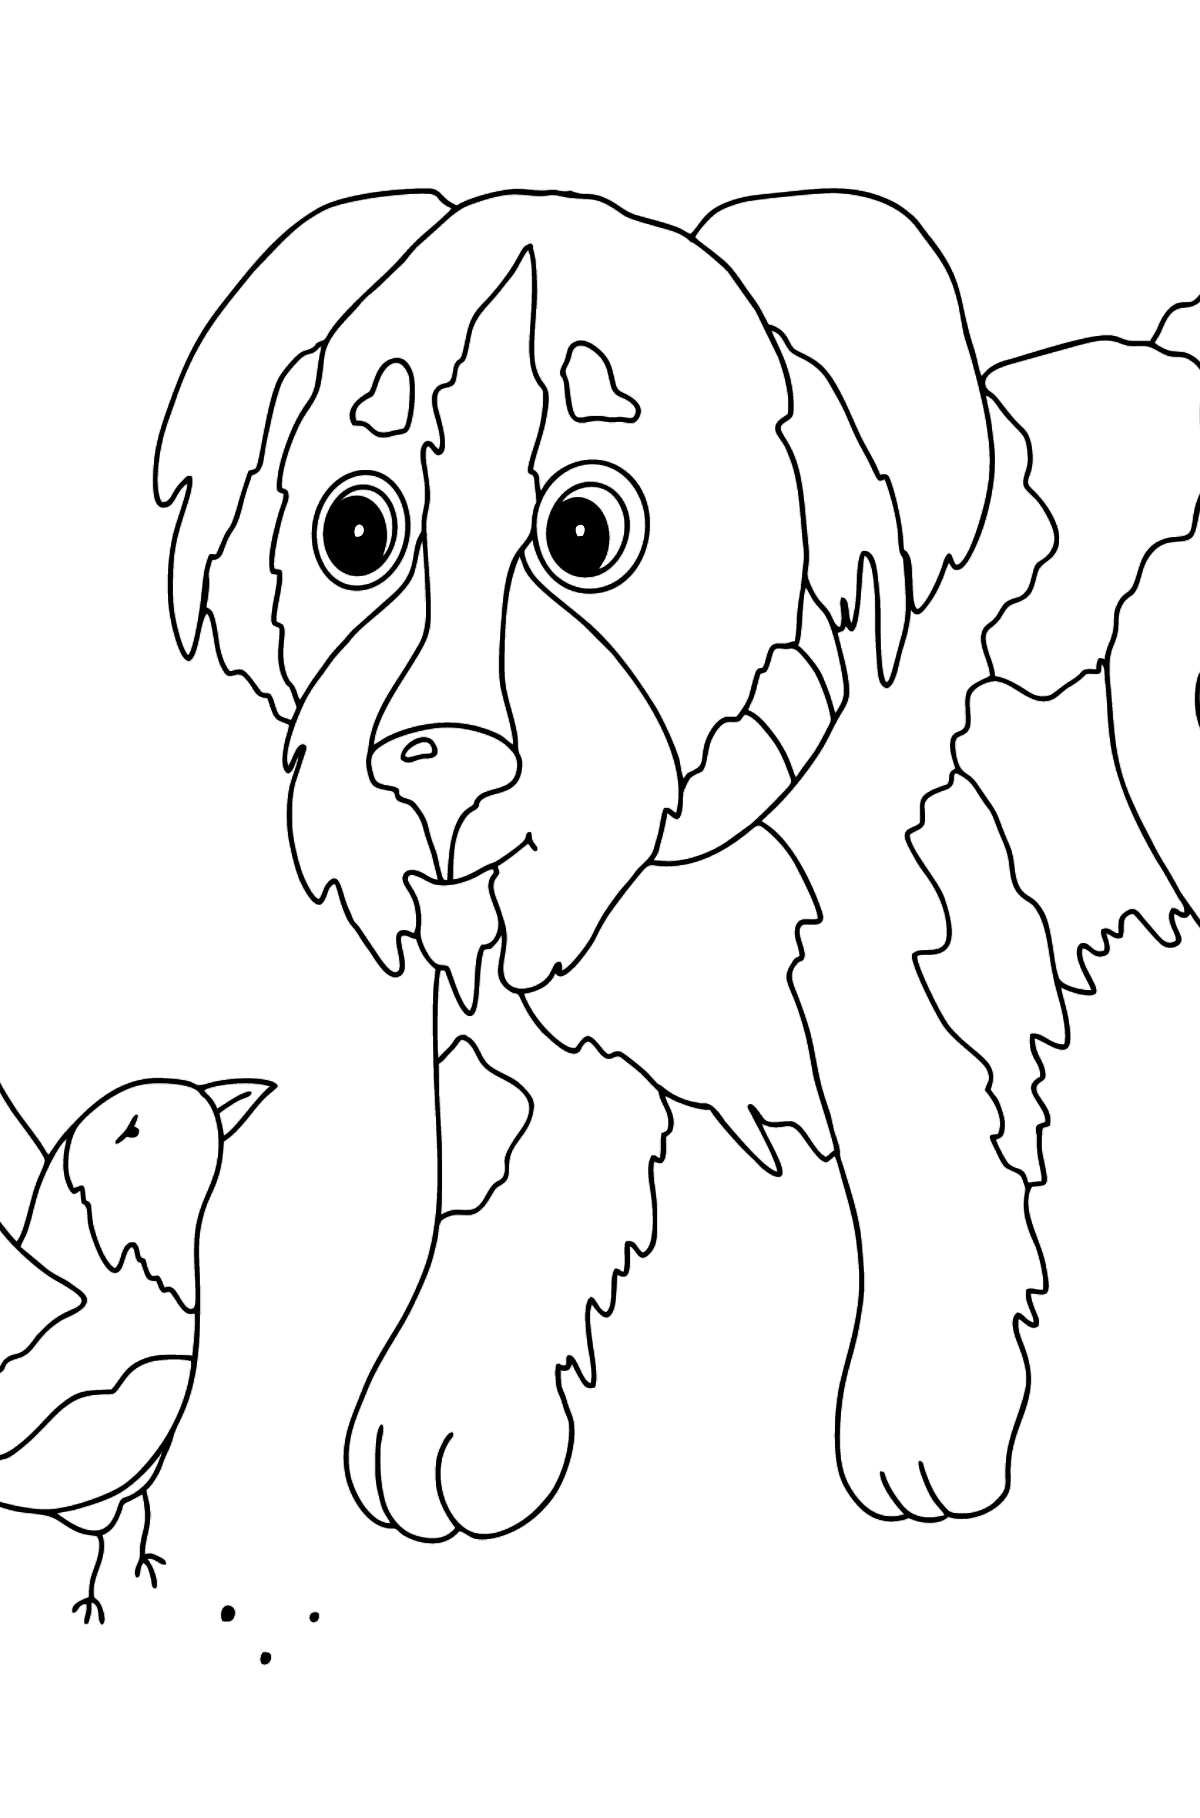 Boyama sayfası sevimli köpek yavrusu (kolay) - Boyamalar çocuklar için